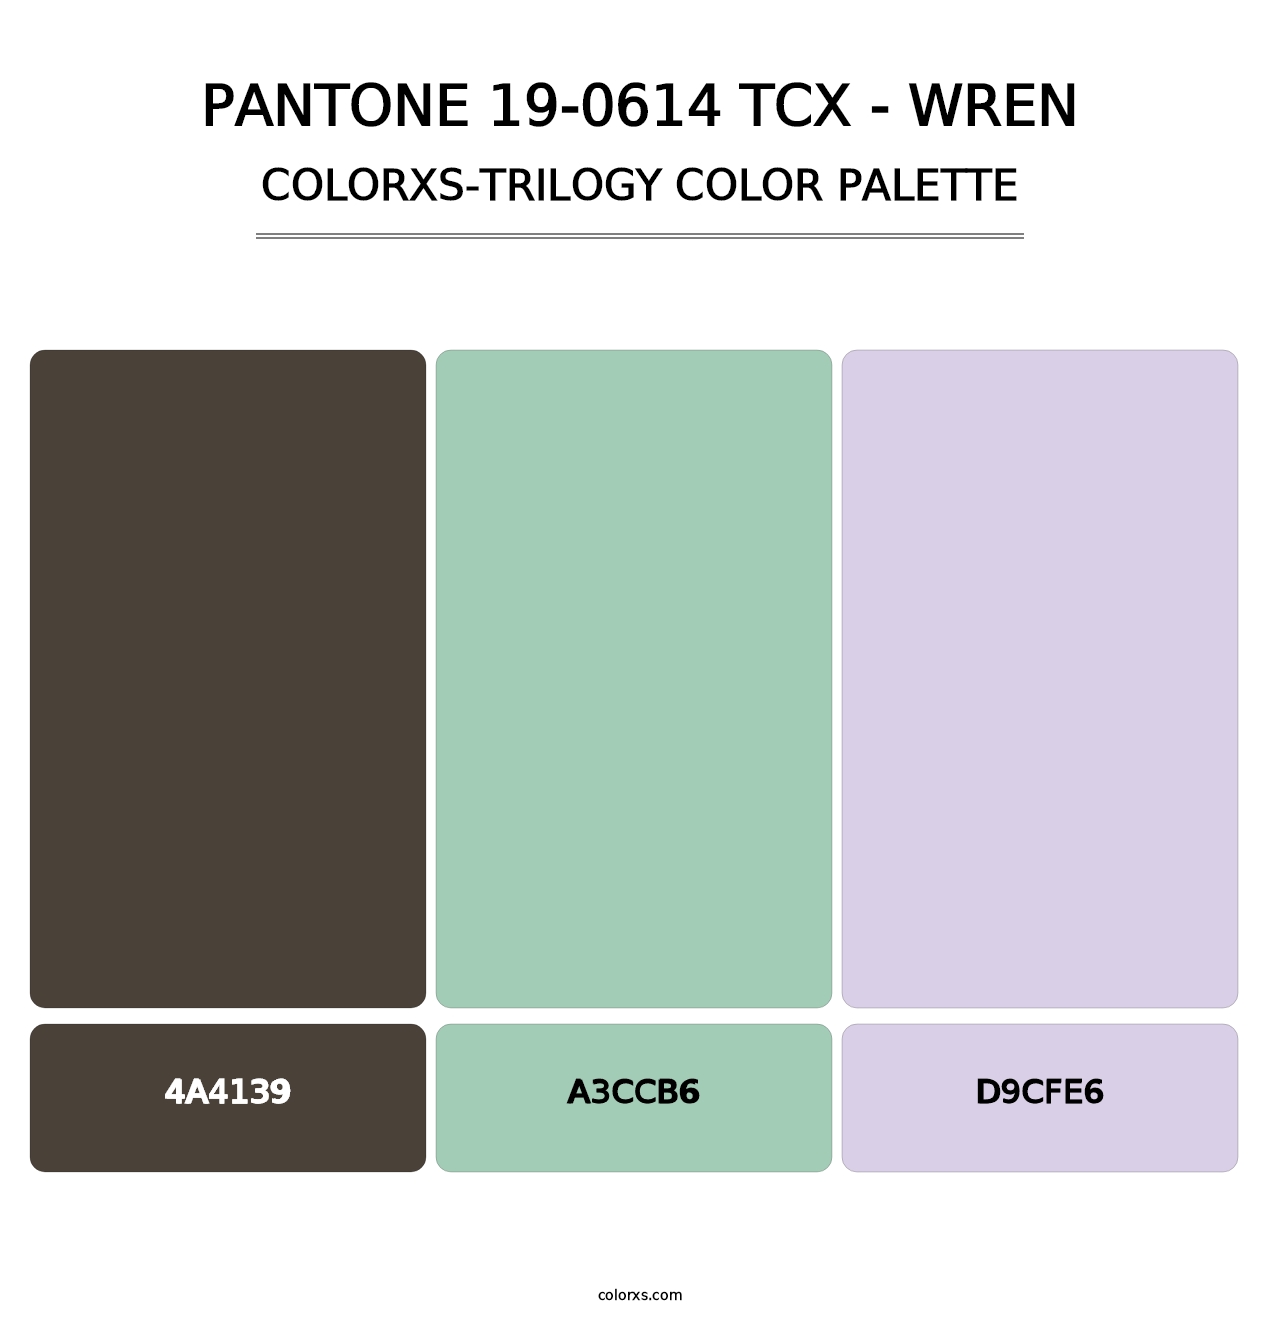 PANTONE 19-0614 TCX - Wren - Colorxs Trilogy Palette